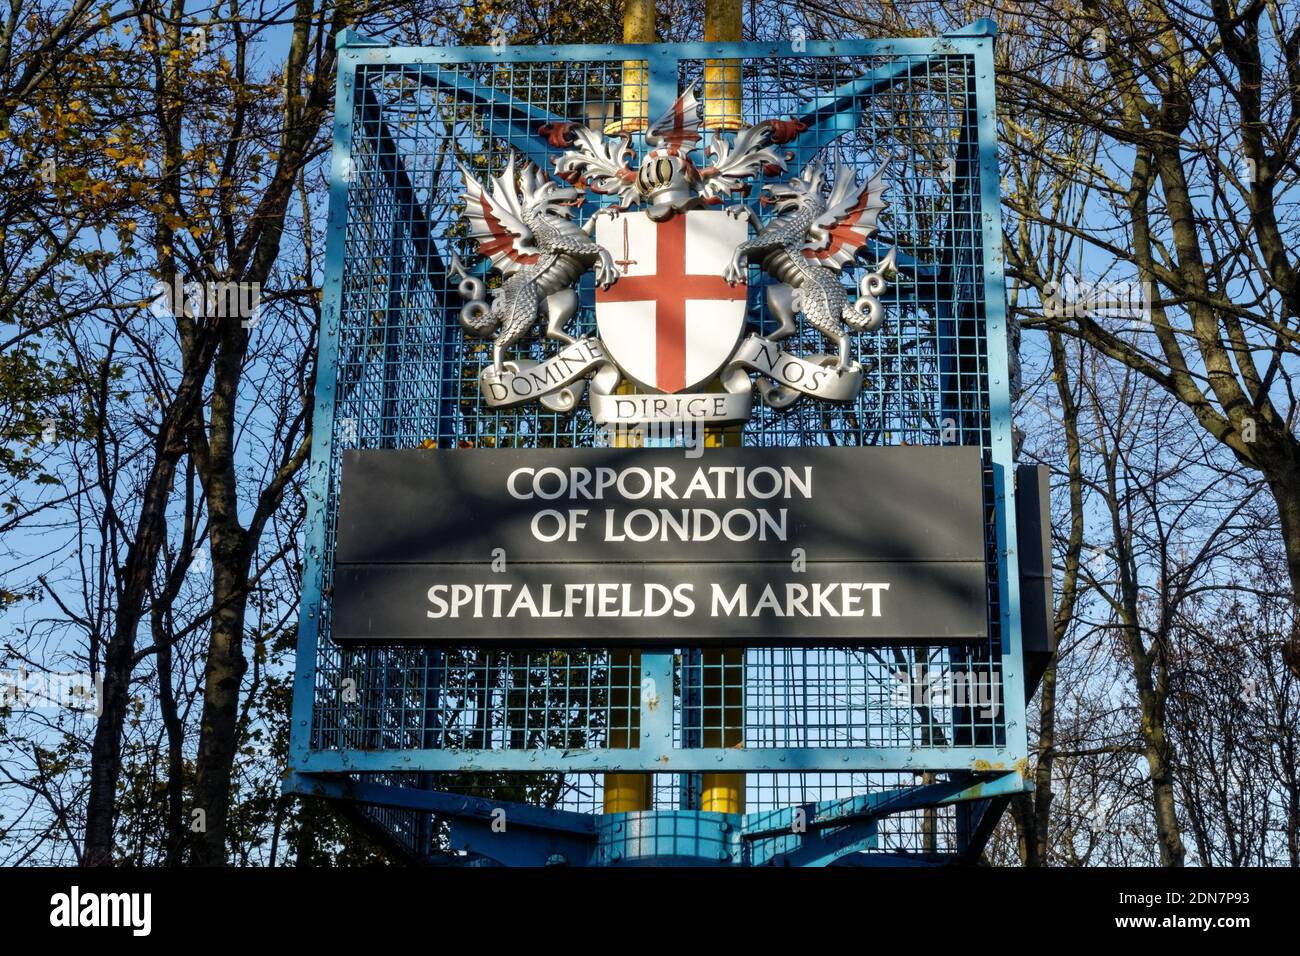 New Spitalfields Market signe avec les armoiries de la City de Londres ci-dessus, Londres Angleterre Royaume-Uni Banque D'Images